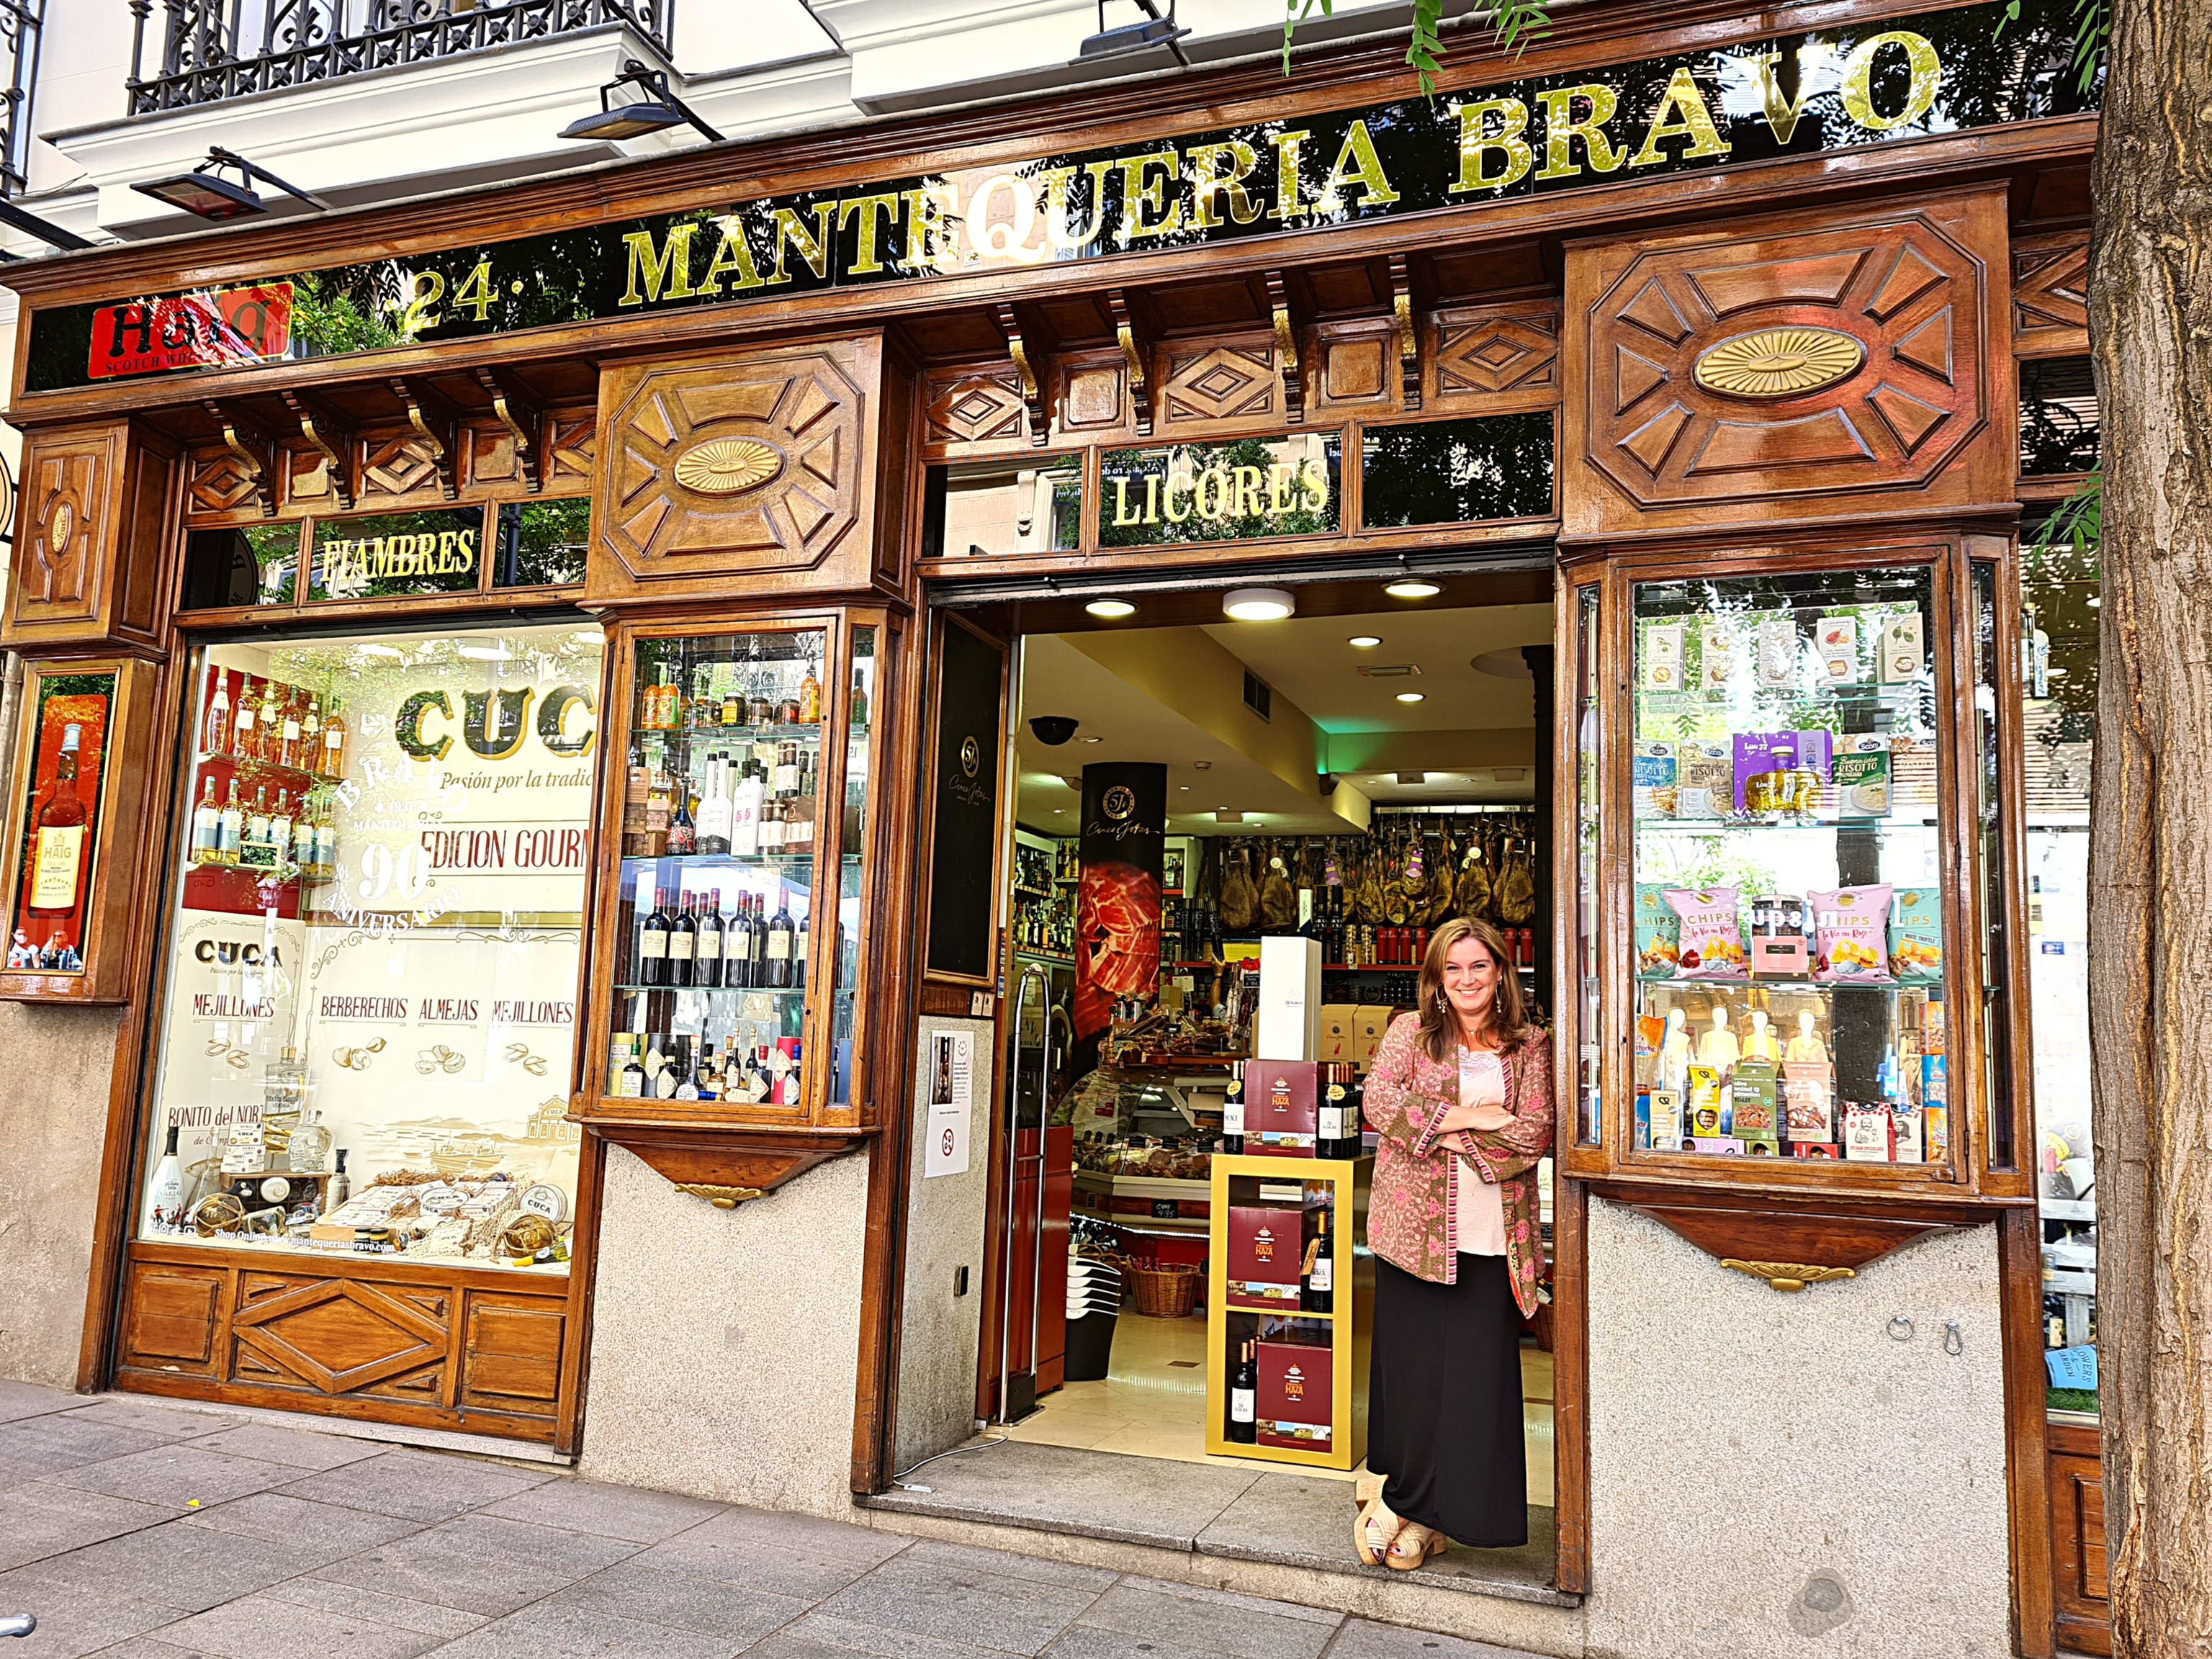 Elena Bravo, nieta del fundador de esta tienda, mantiene la máxima de "calidad y atención personal".izada".